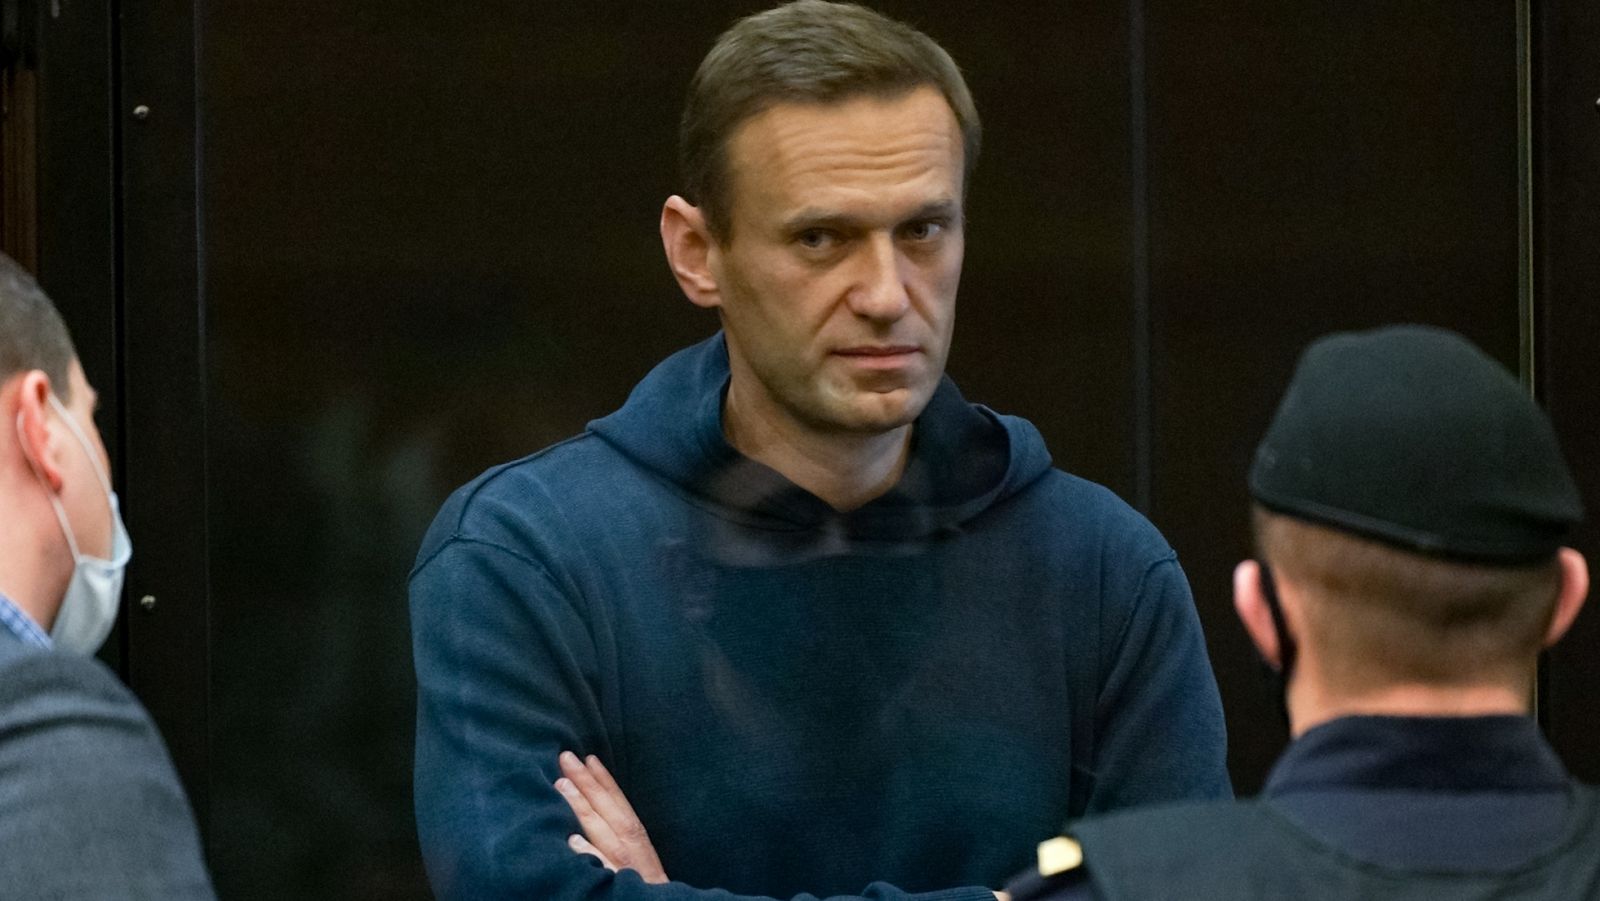 El líder opositor ruso Alexéi Navalny, de 44 años, se enfrenta a tres años y medio de prisión